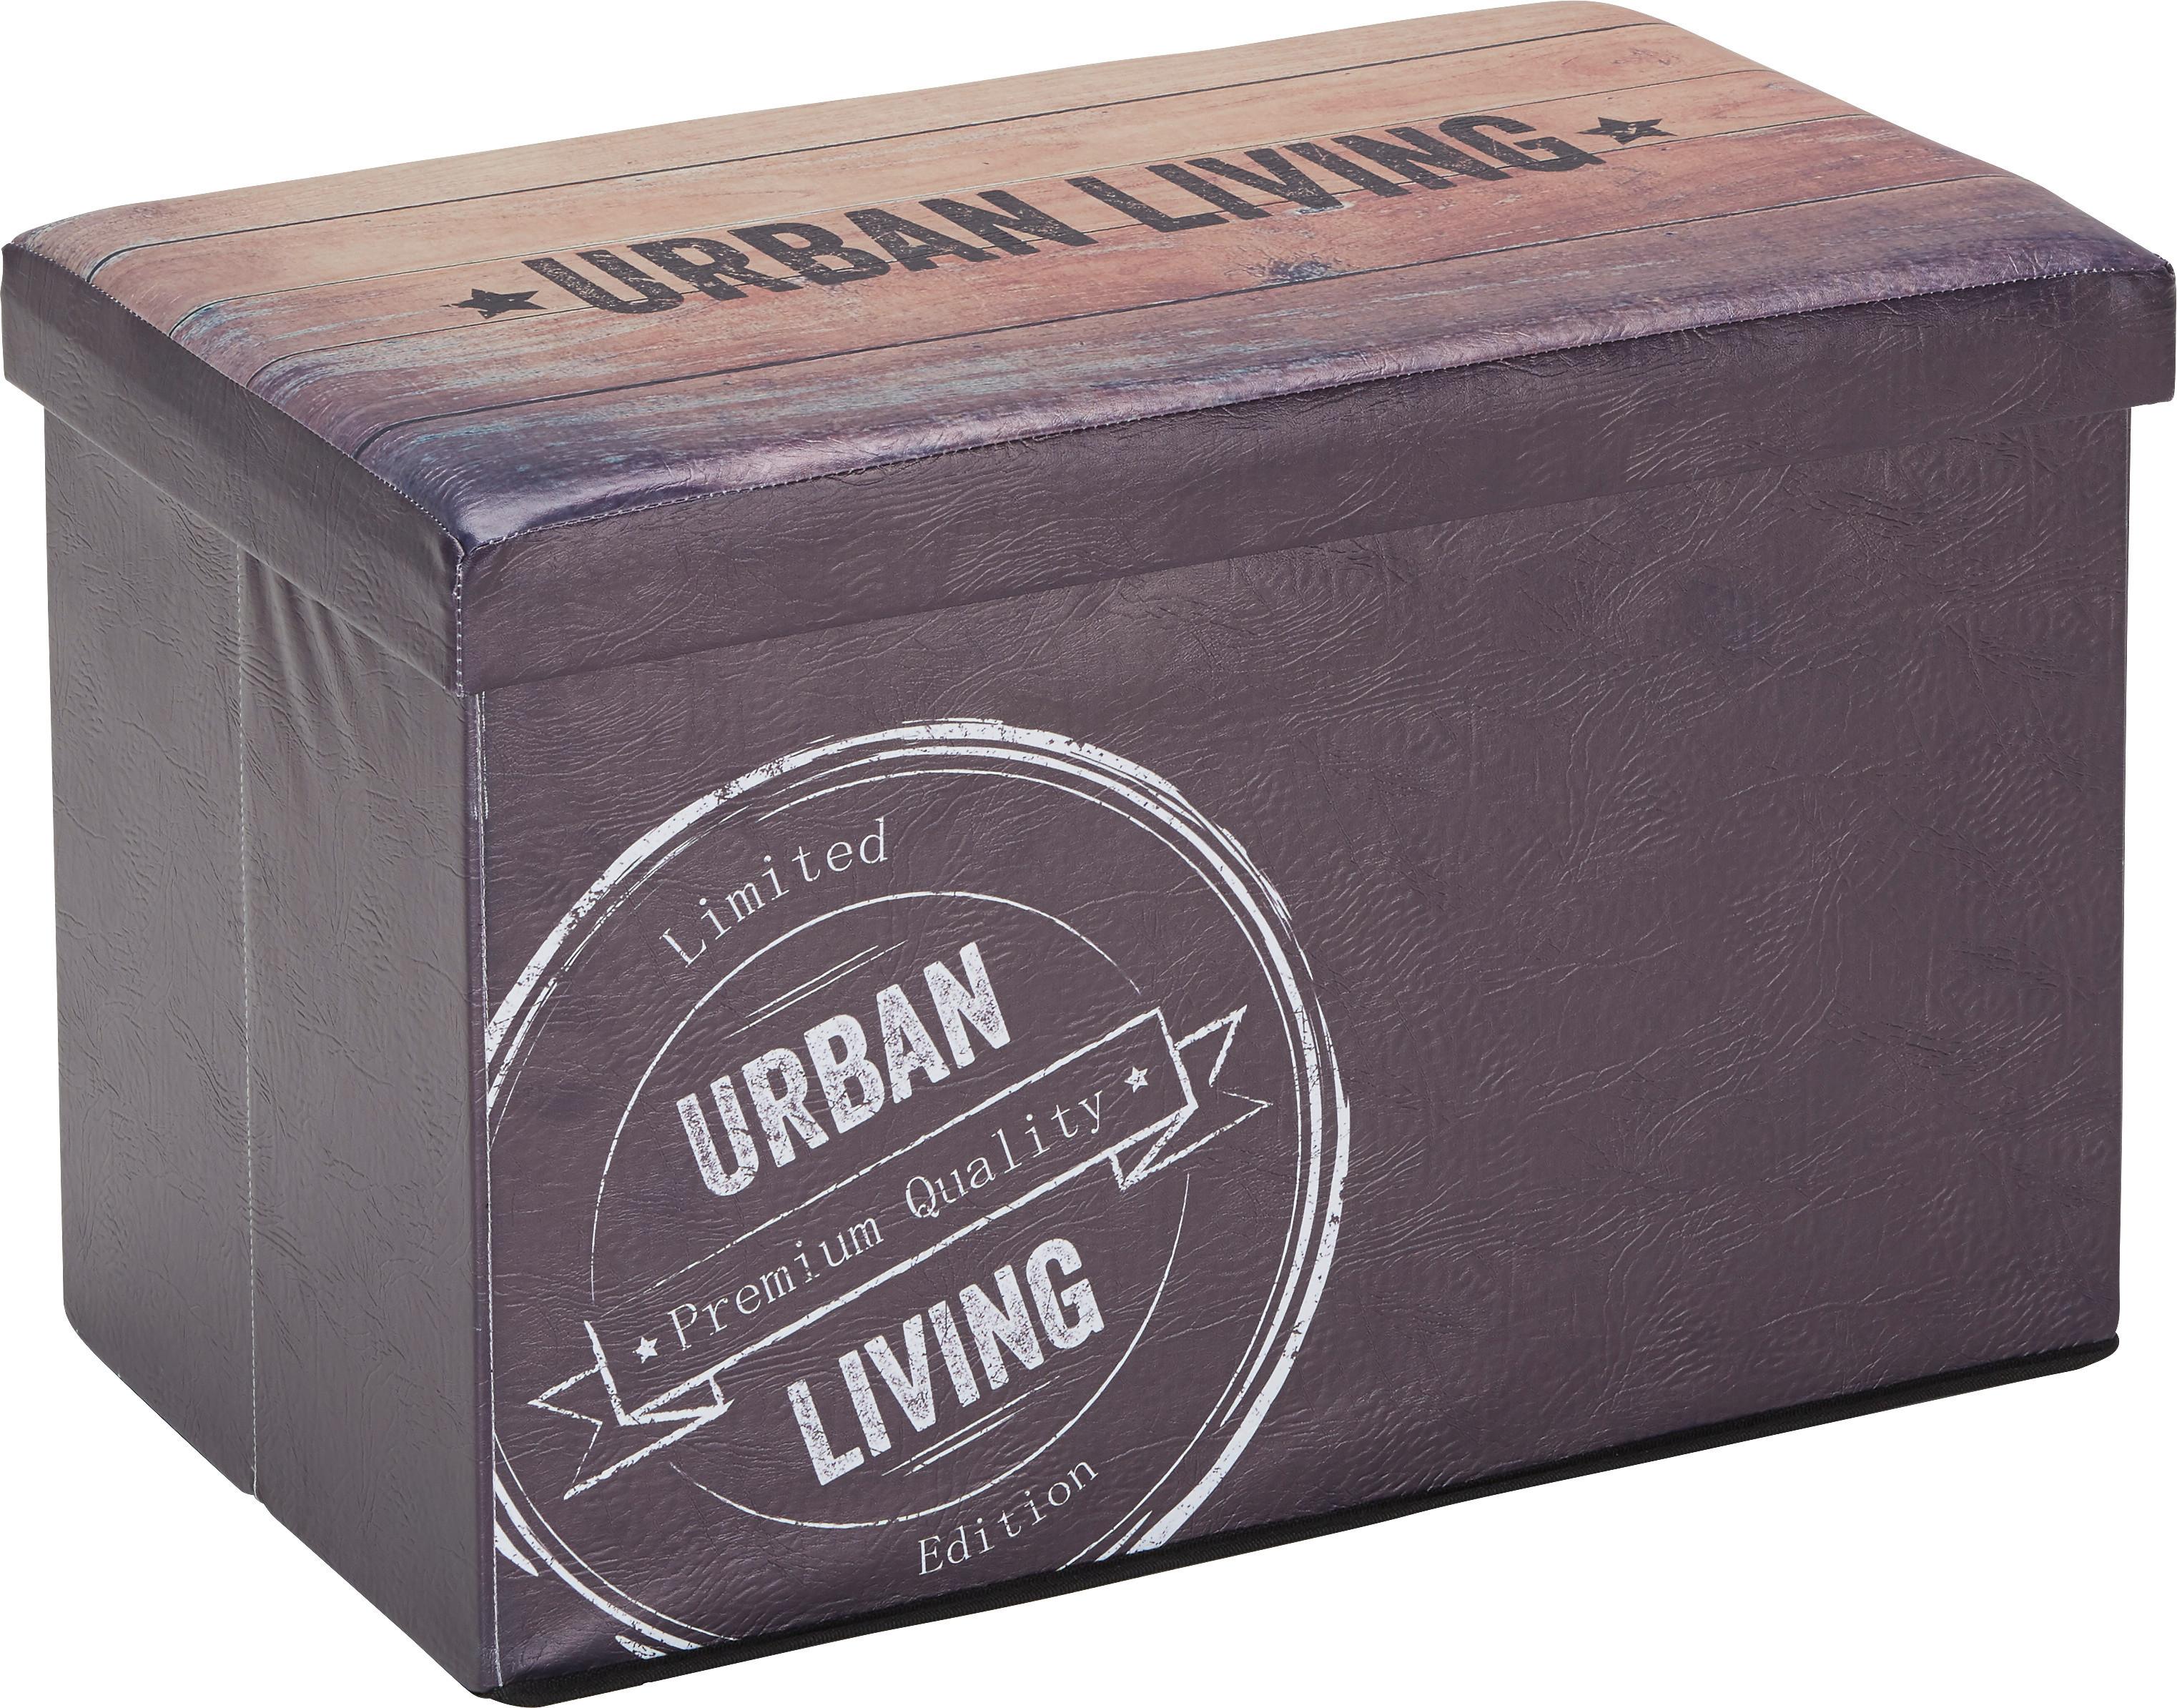 Kutija Za Sjedenje Urban Vintage - tamno smeđa, Lifestyle (65/40/40cm) - Modern Living